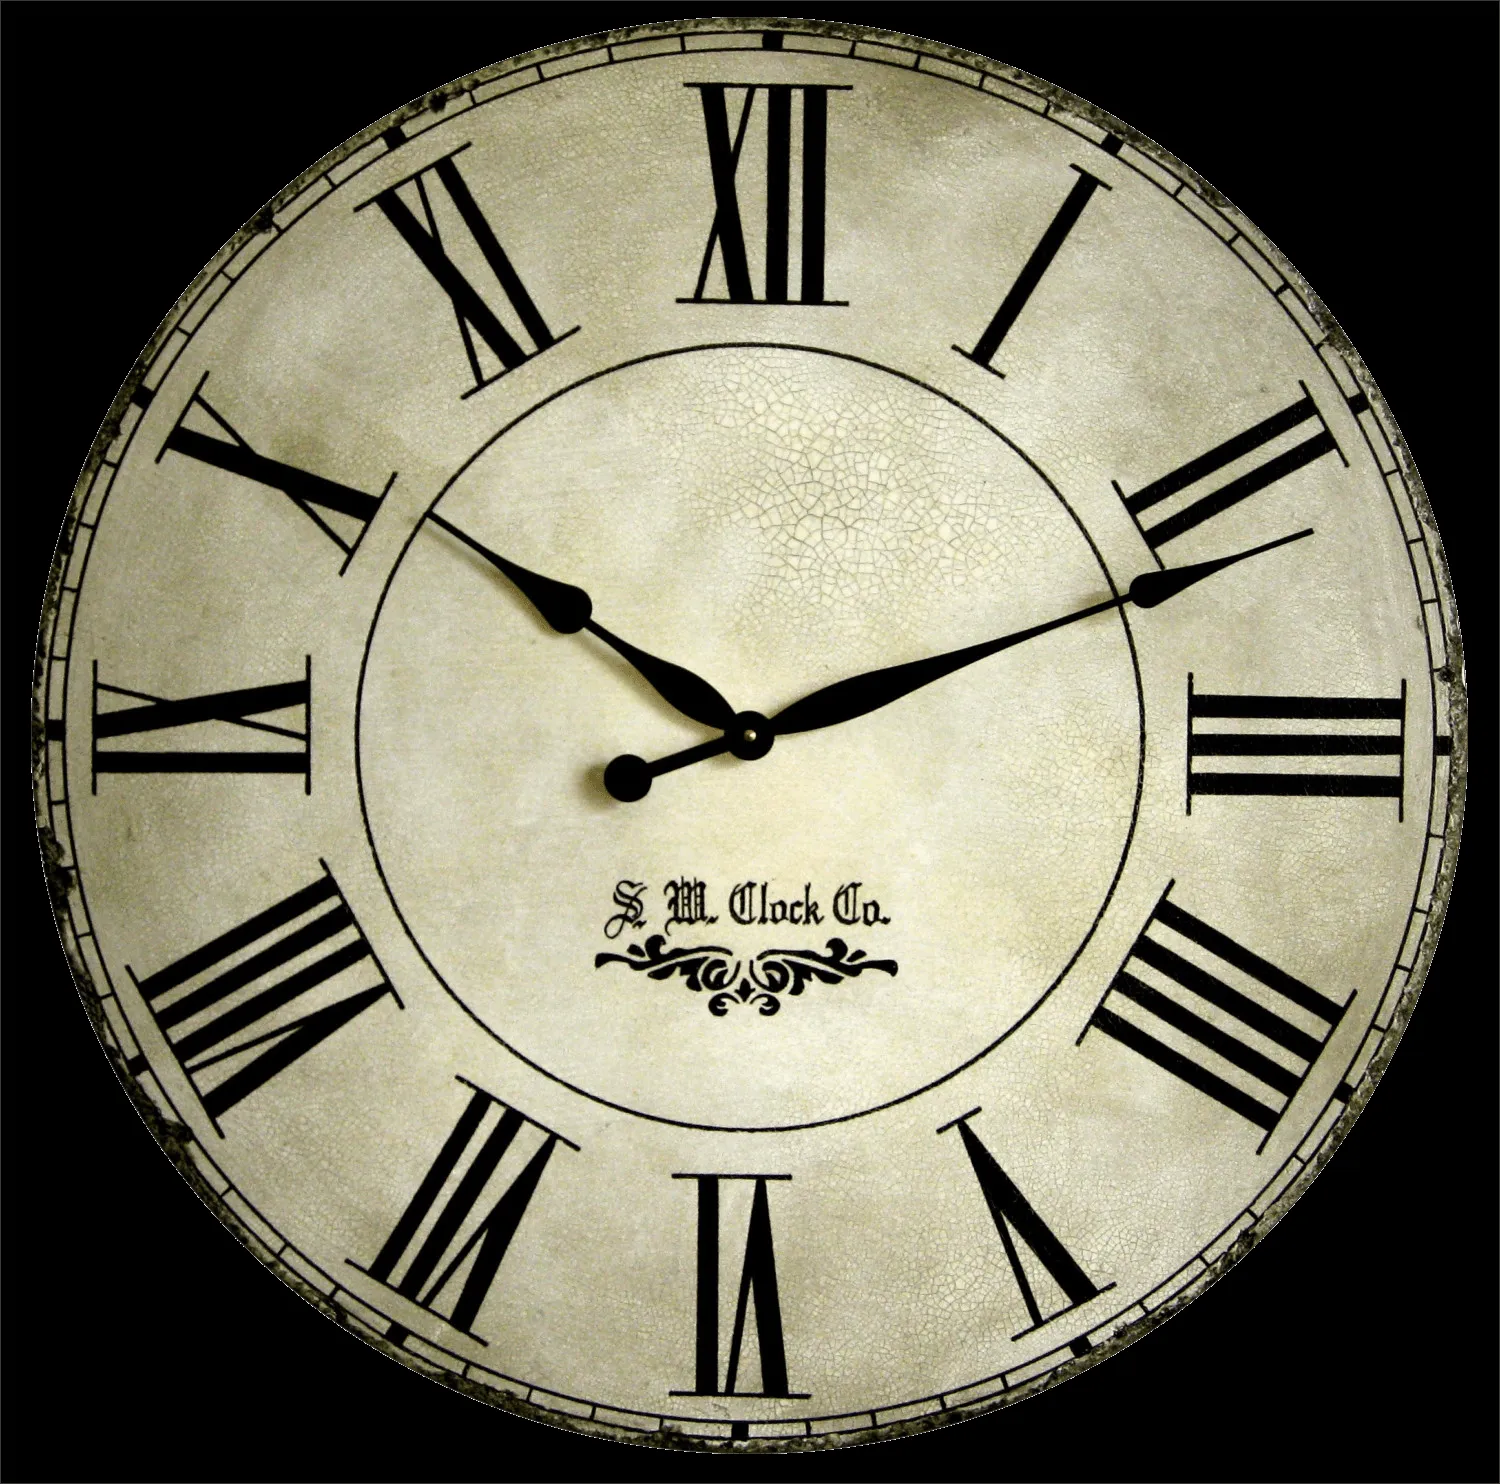 El reloj en imágenes - Imagui